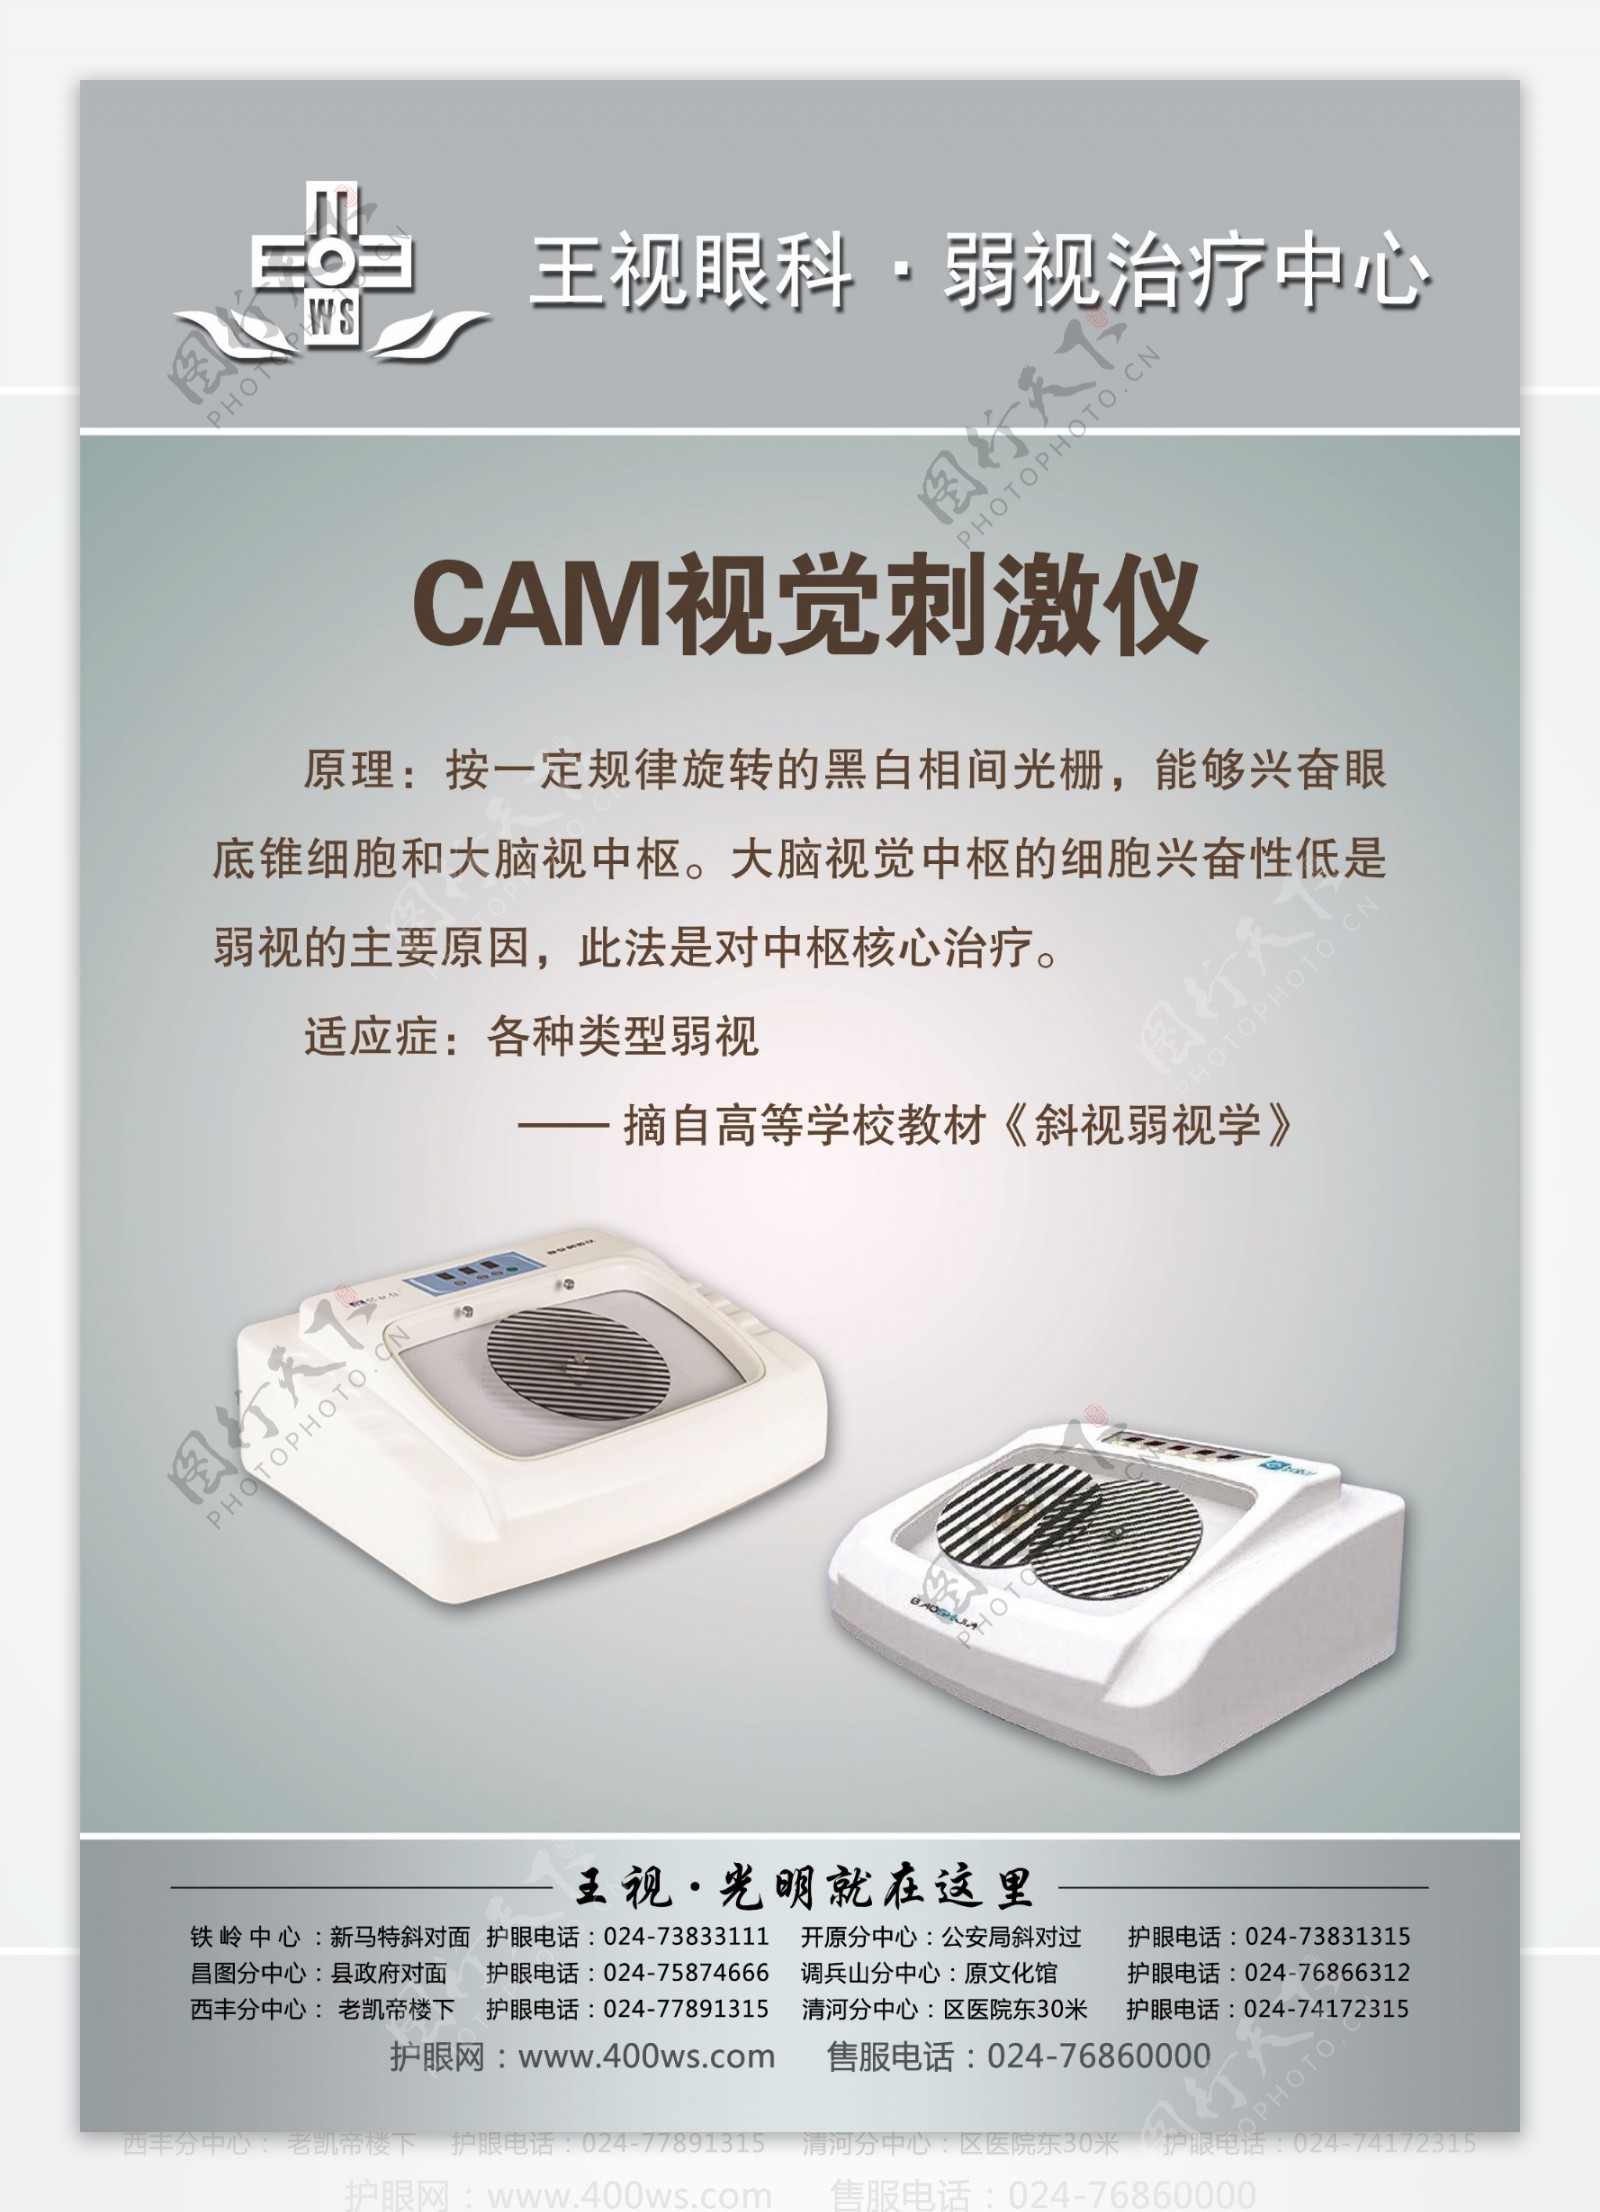 CAM视觉刺激仪